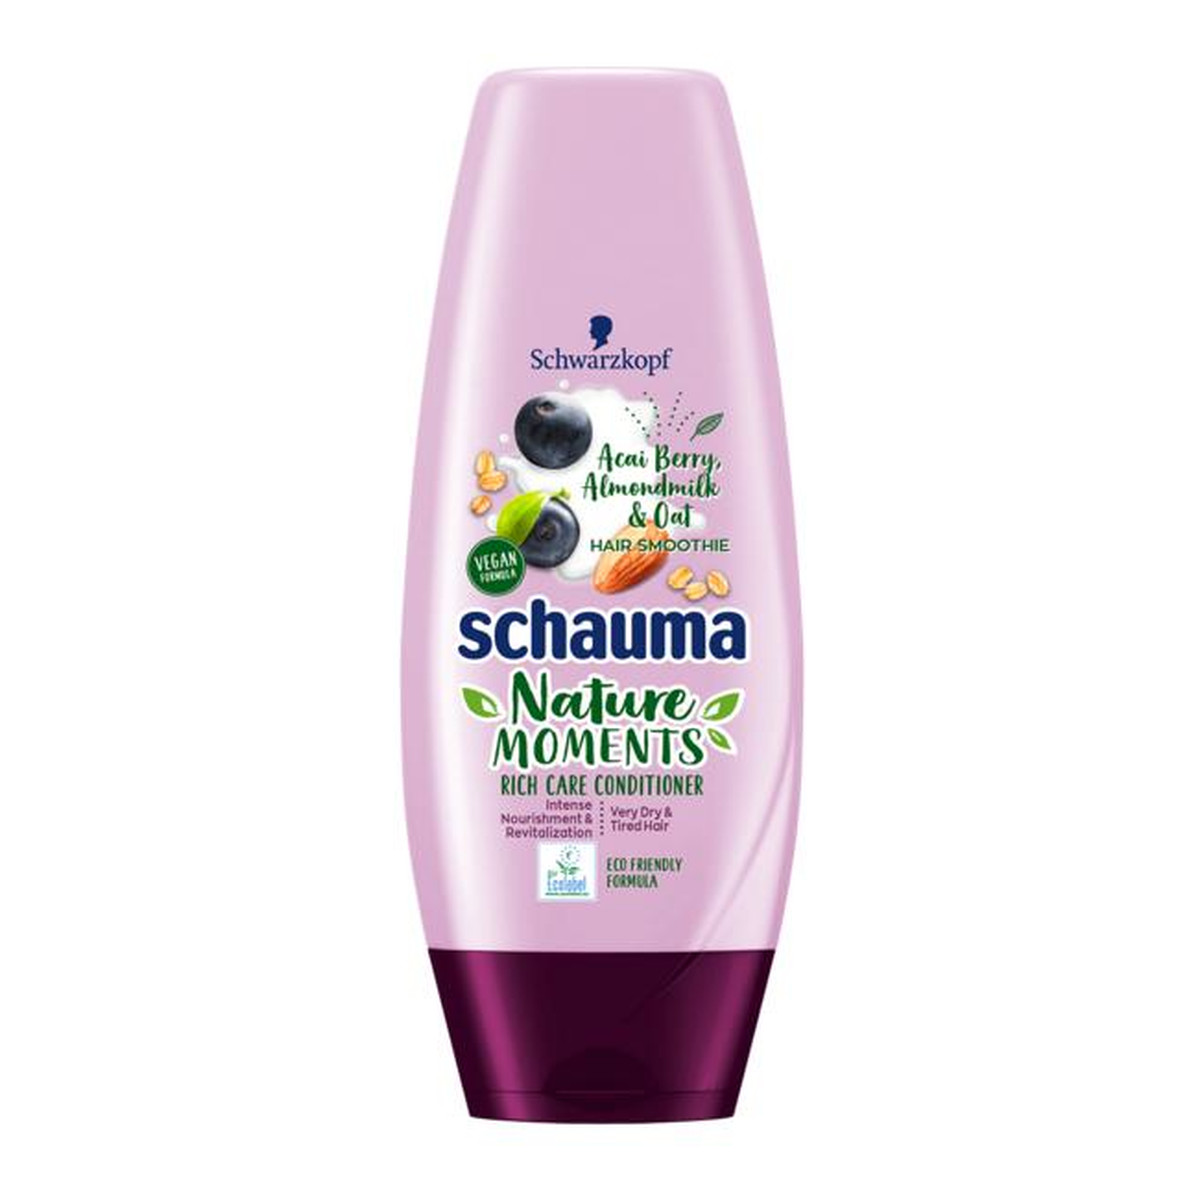 Schauma Nature moments hair smoothie conditioner odżywka do włosów suchych i bardzo suchych 200ml